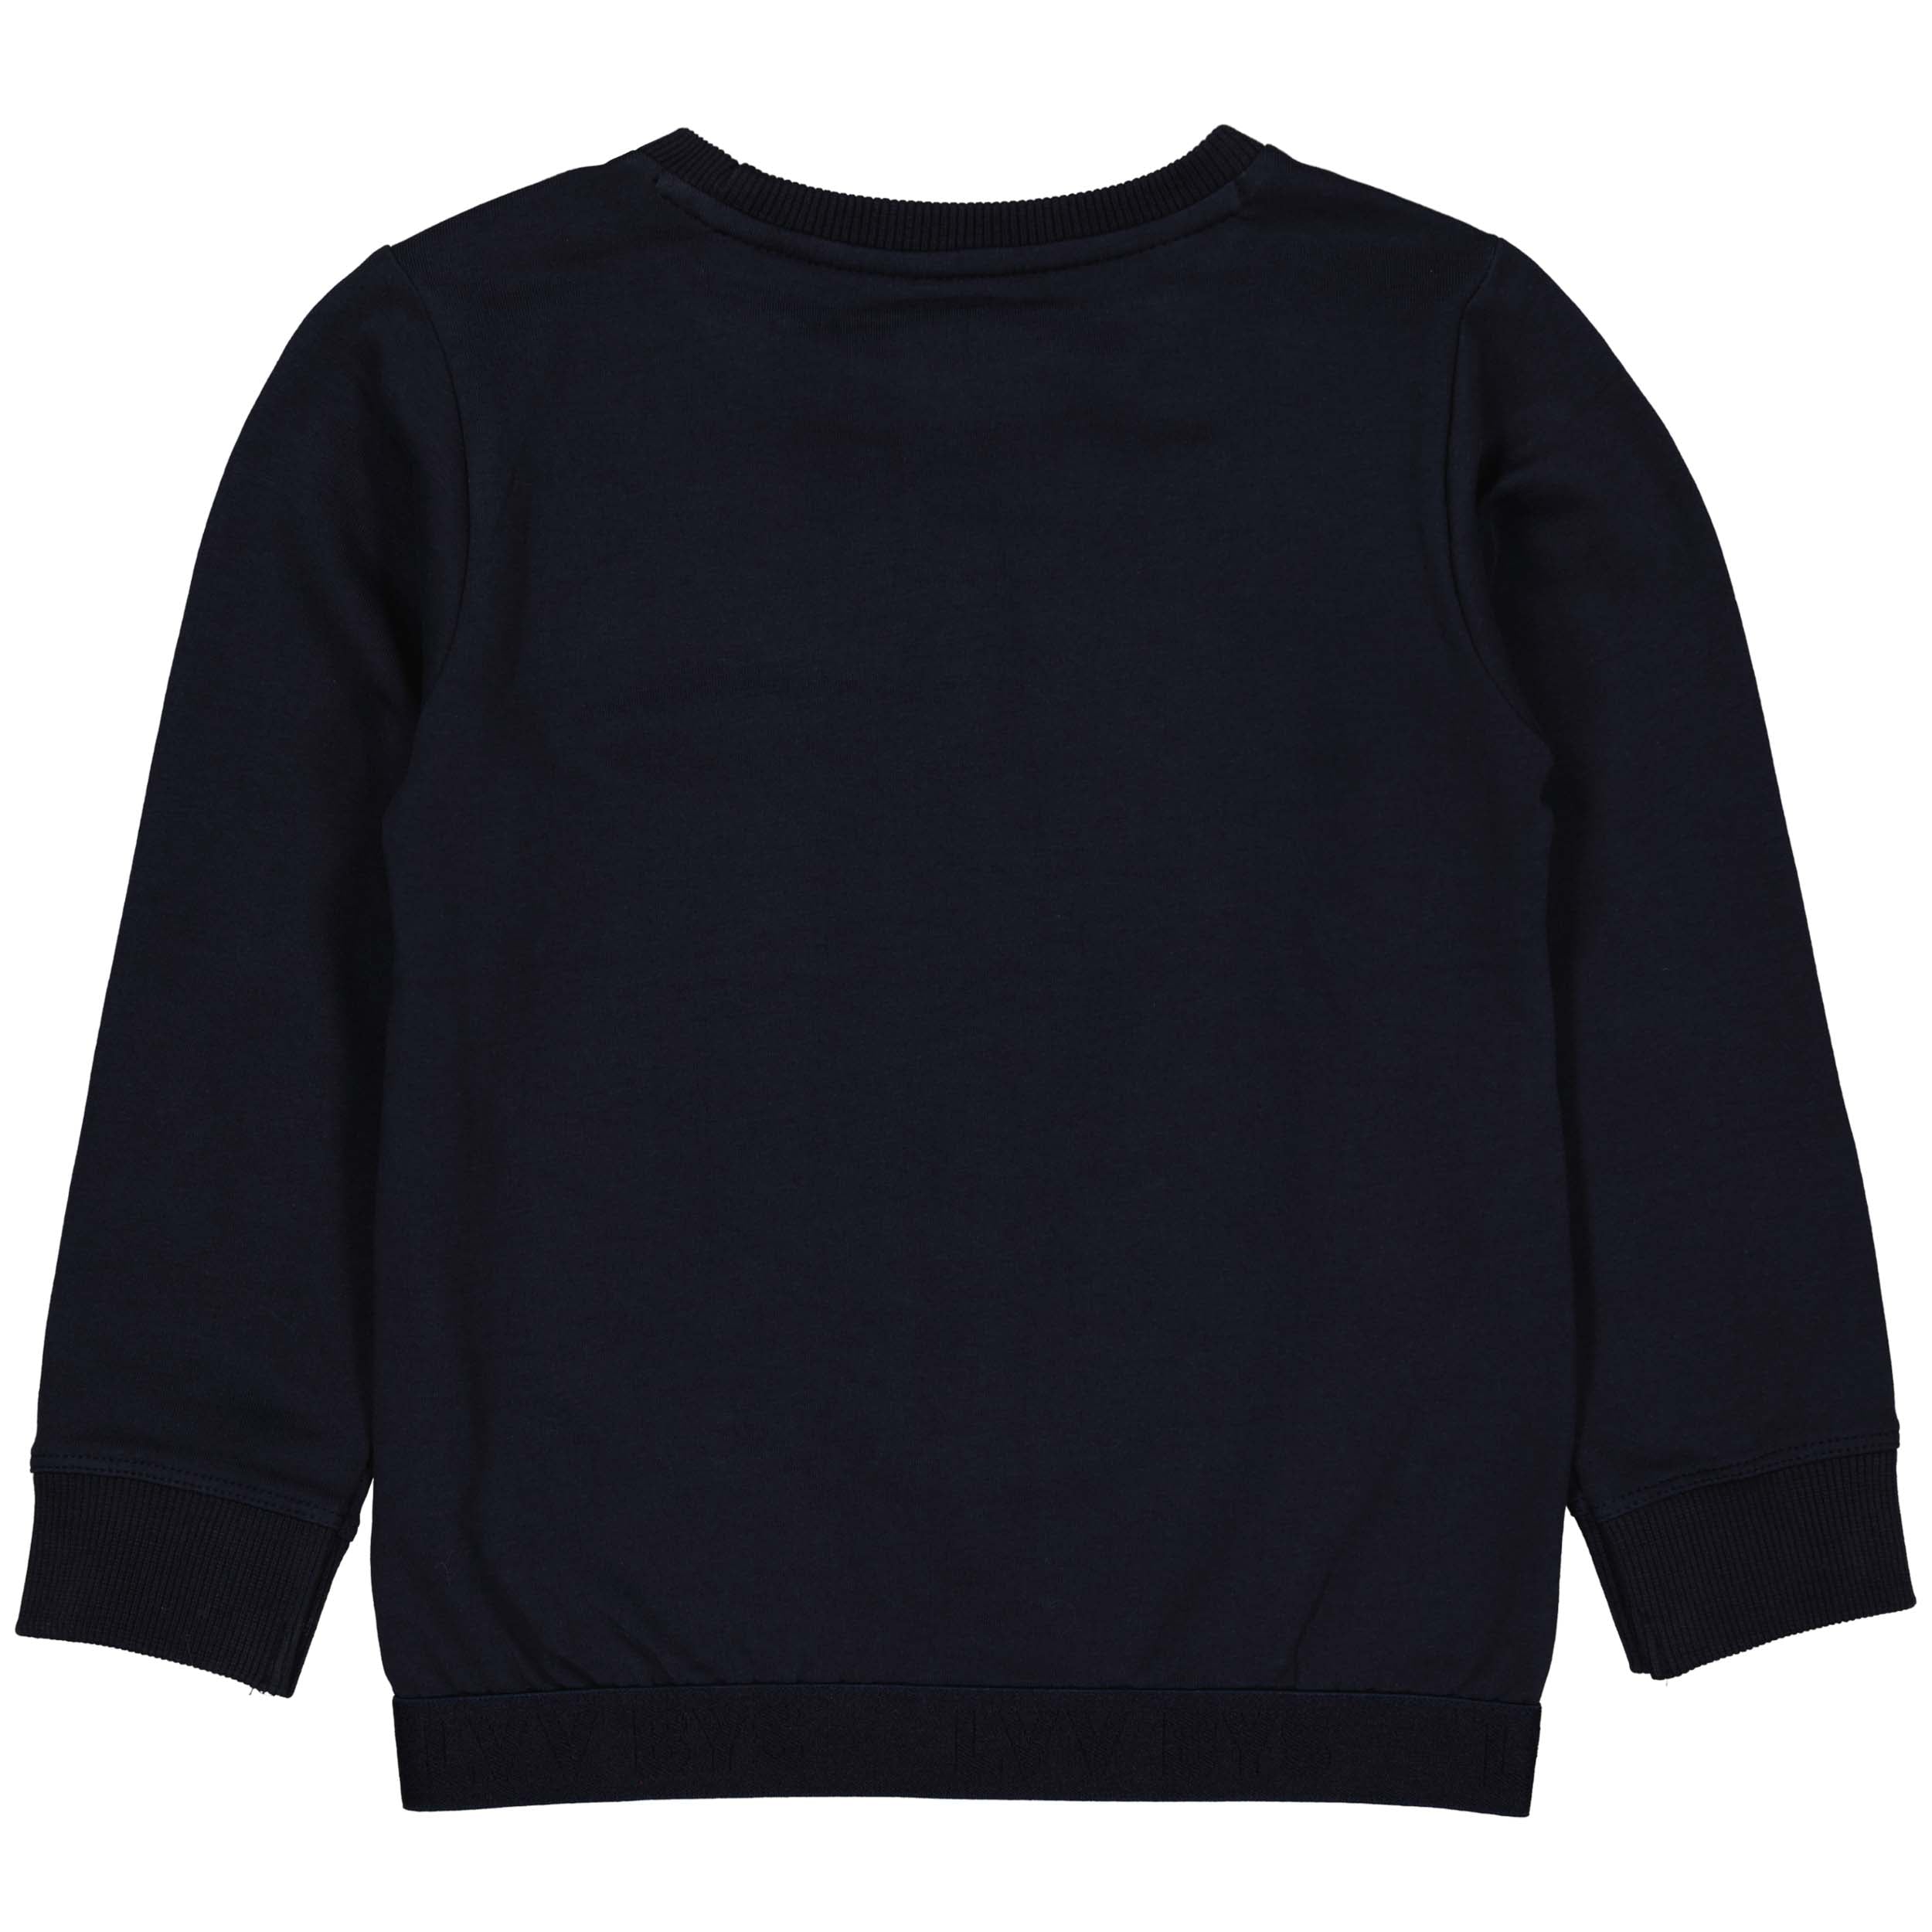 Jongens Sweater BENW221 van Little Levv in de kleur Blue Dark in maat 128.